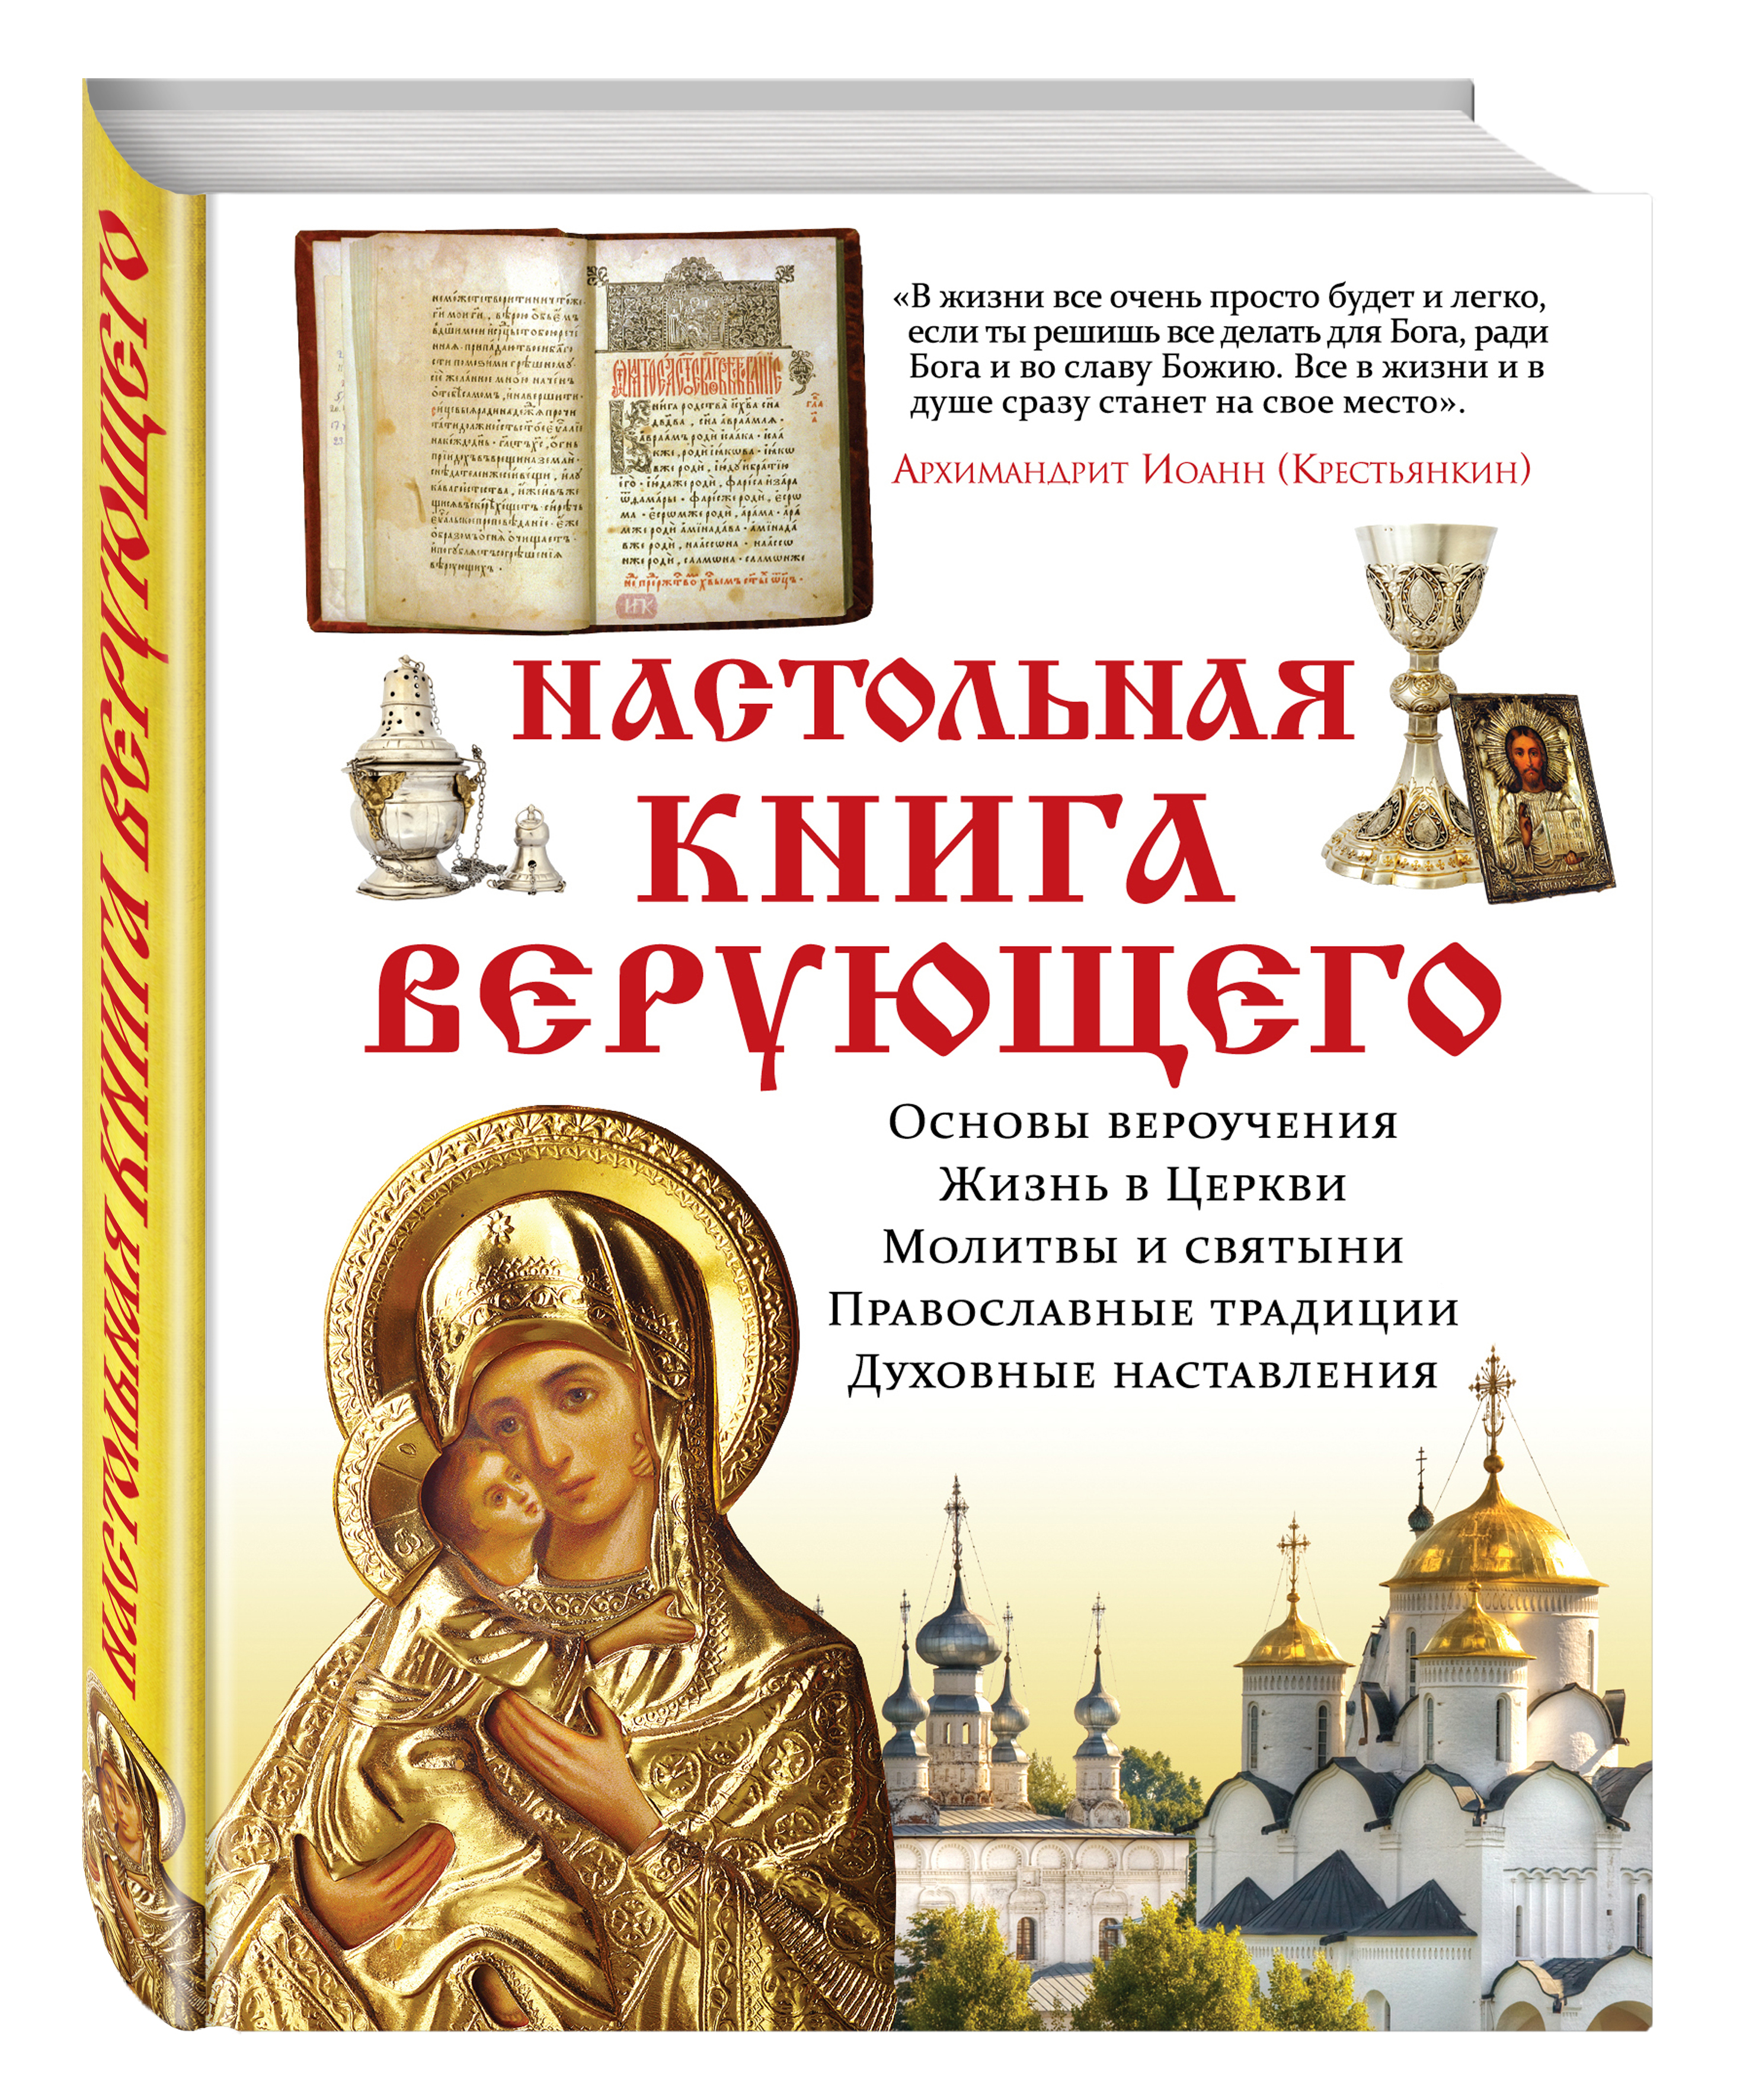 Читать православные истории